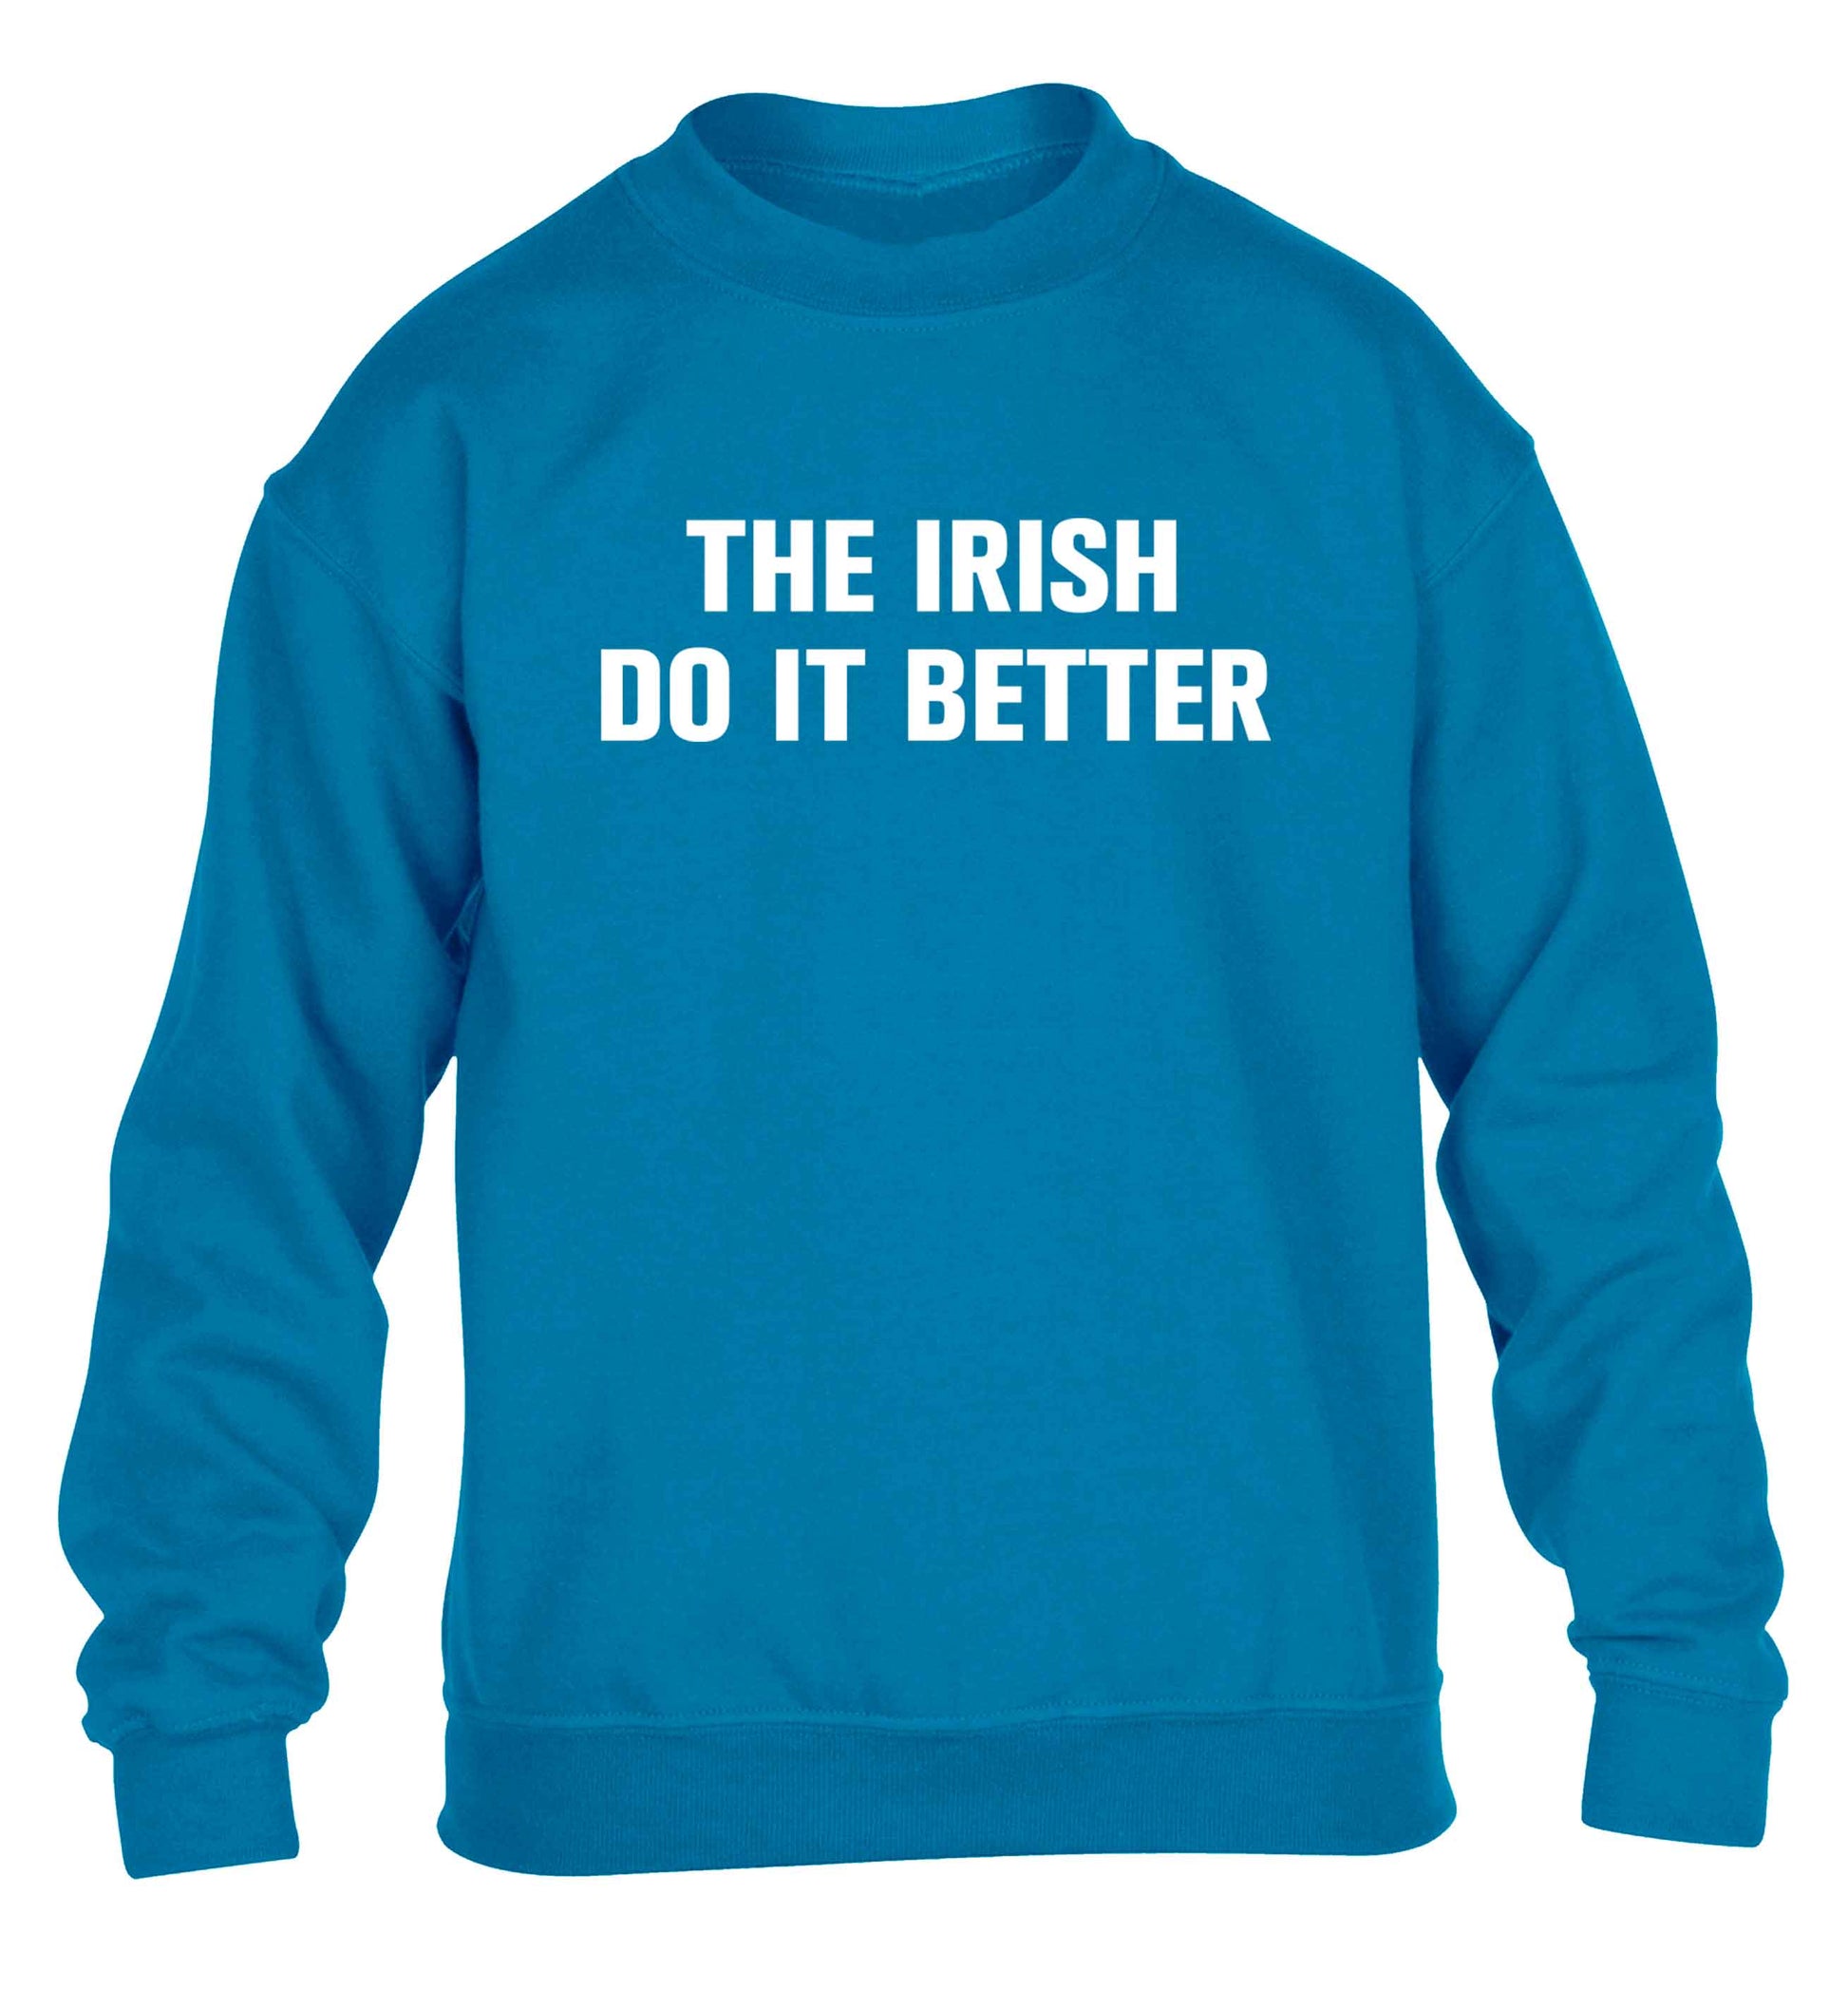 The Irish do it better children's blue sweater 12-13 Years